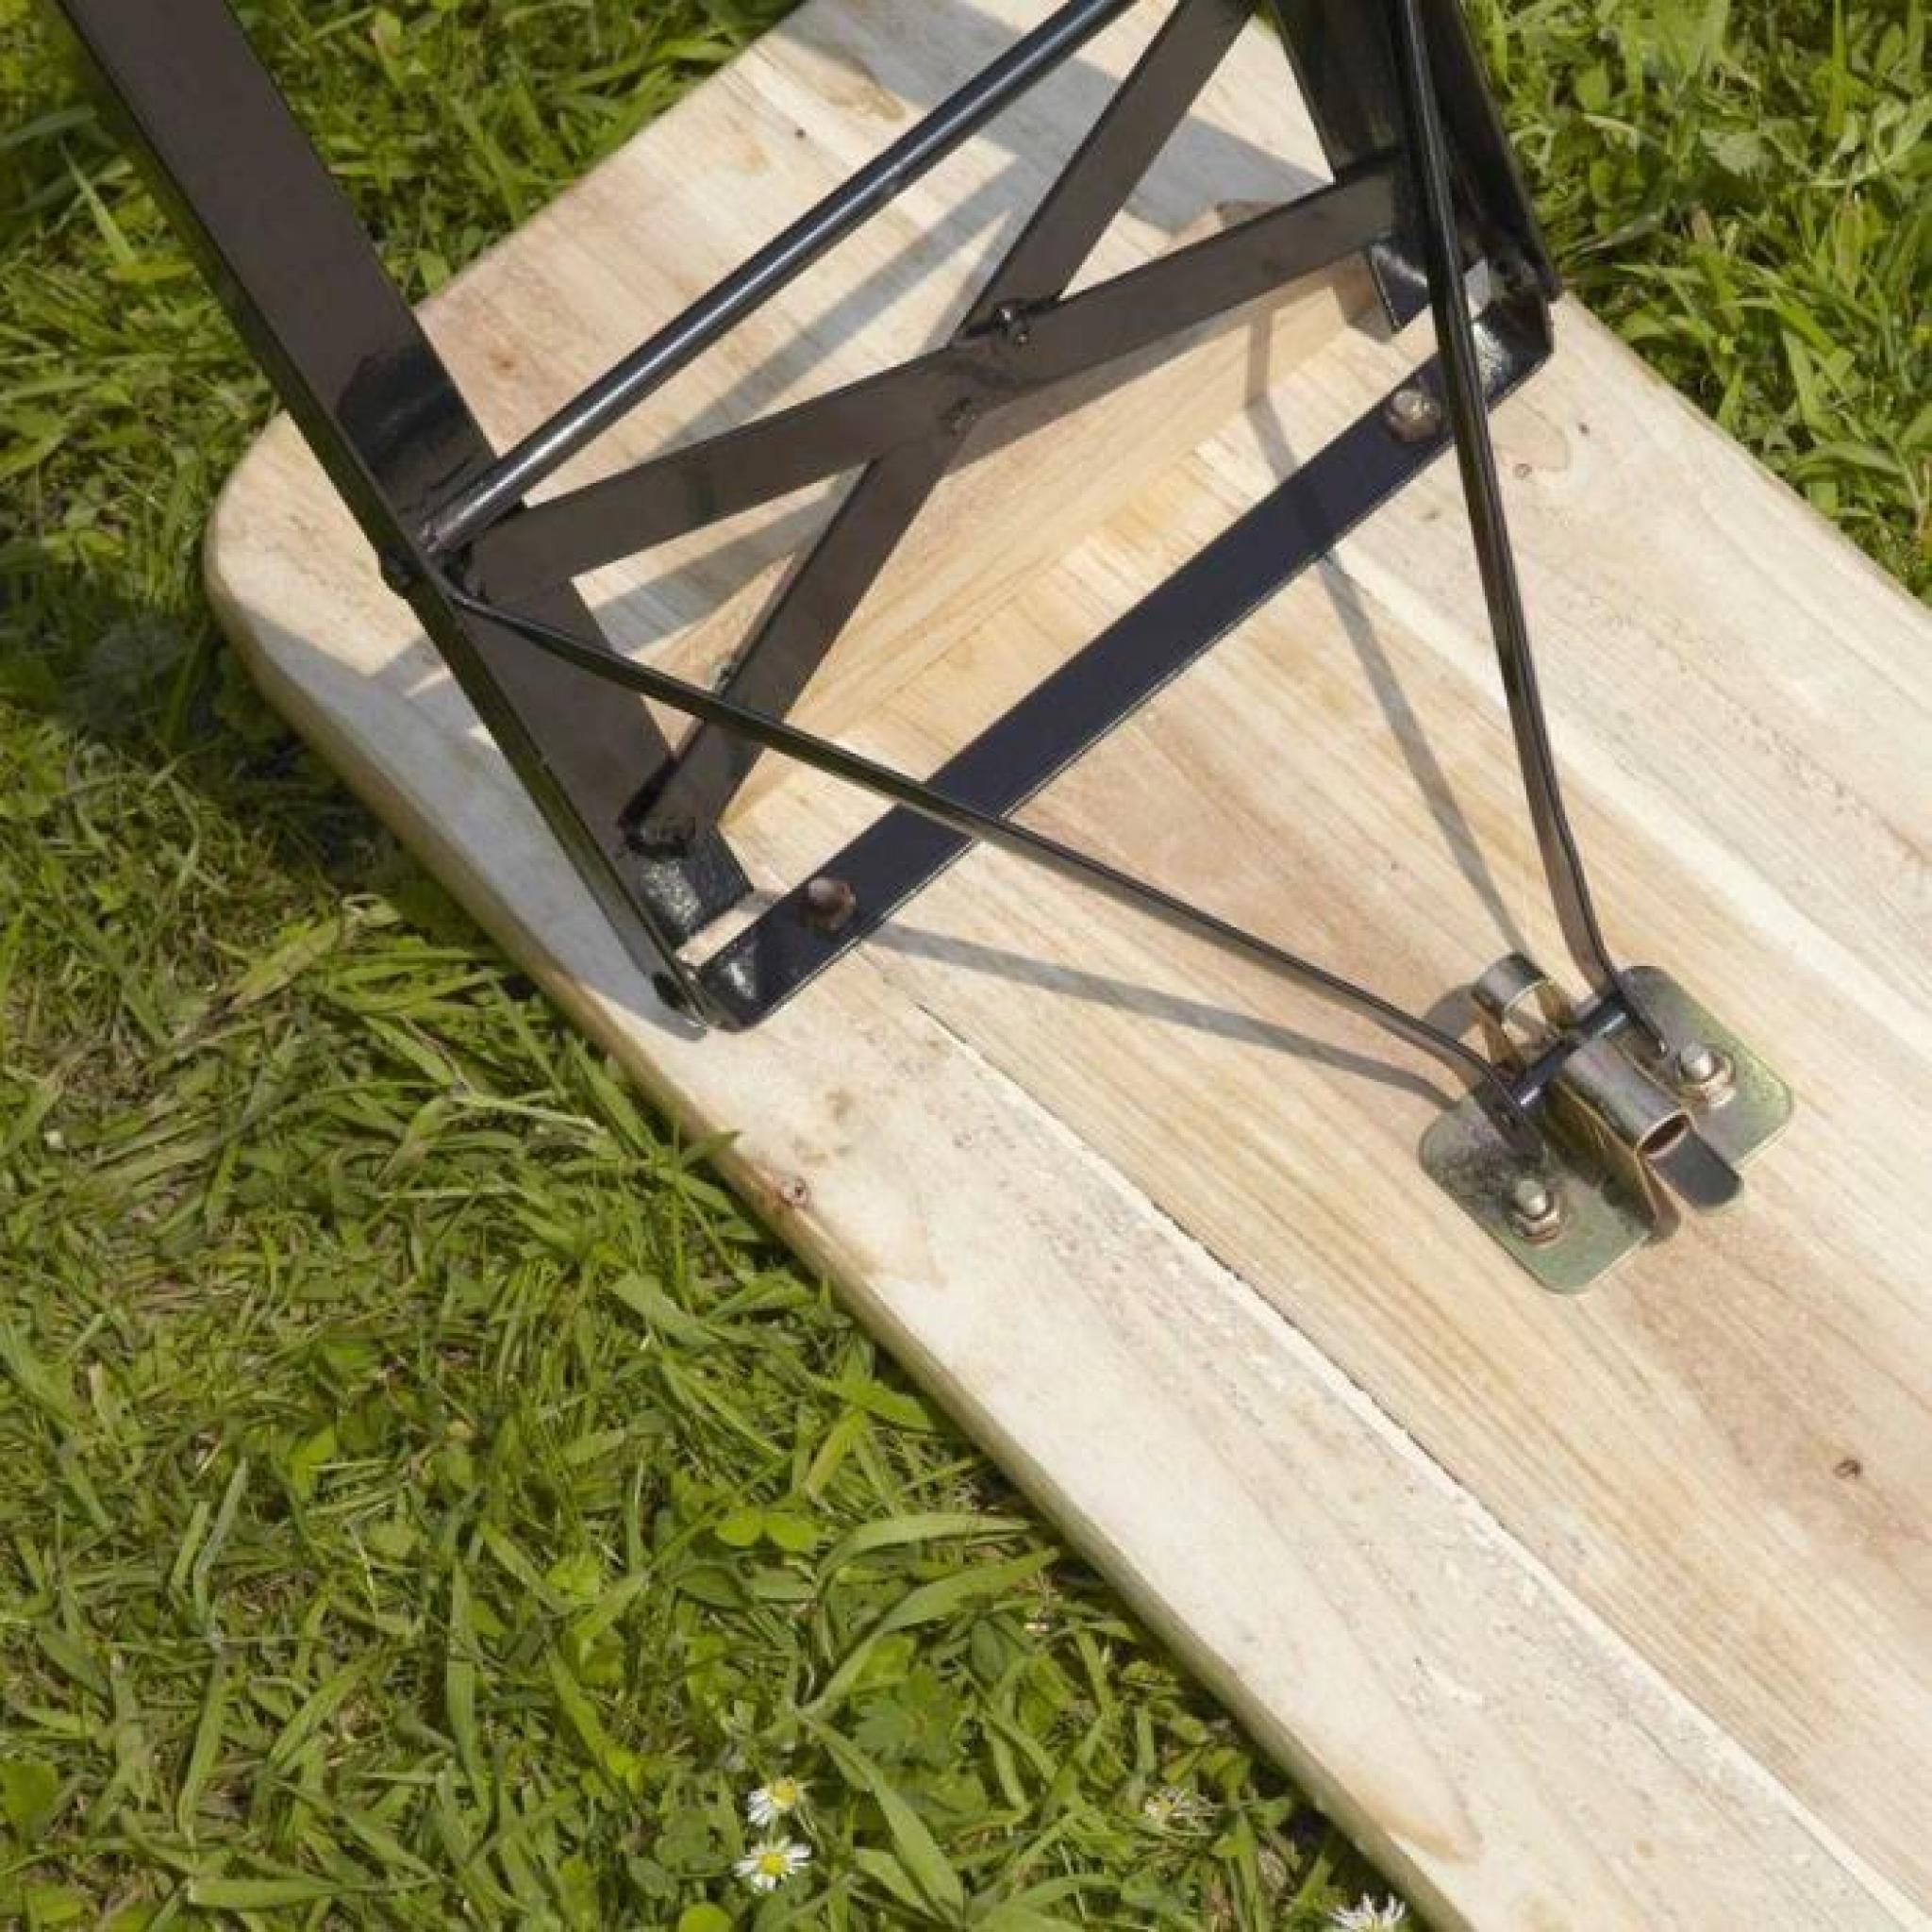 Ensemble table et banc pliant bois pique nique 220 cm pas cher